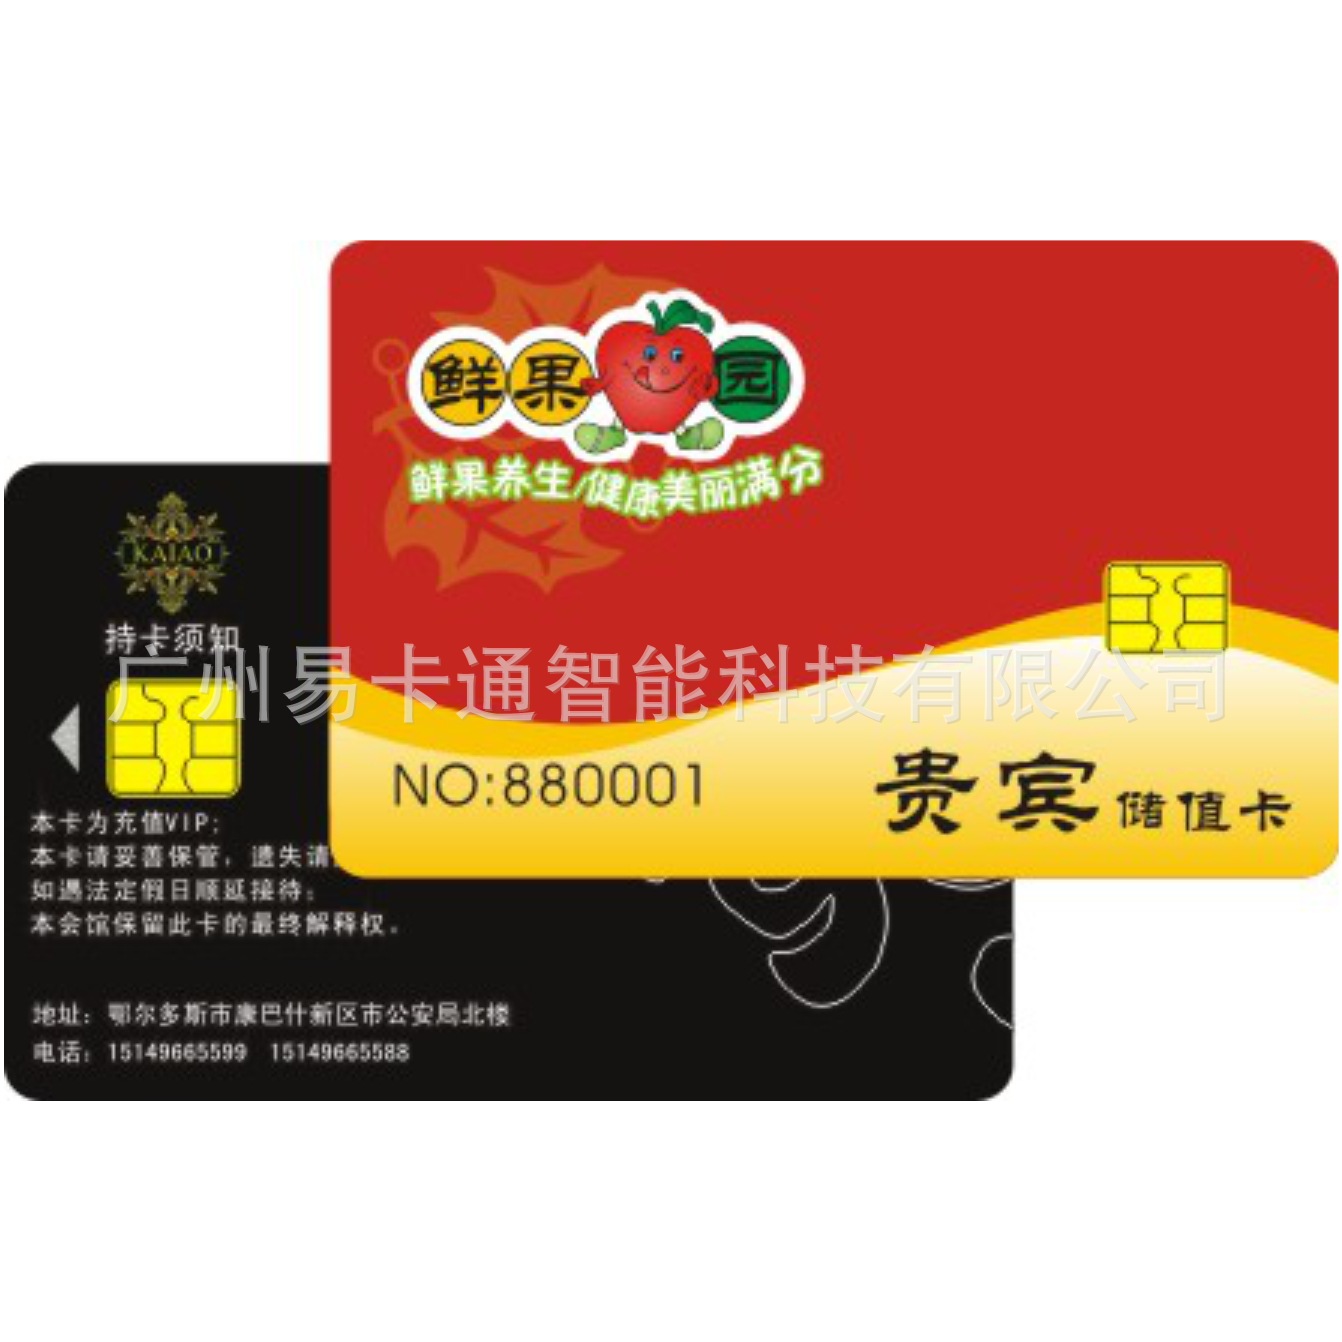 AT24C02 chip card IC card